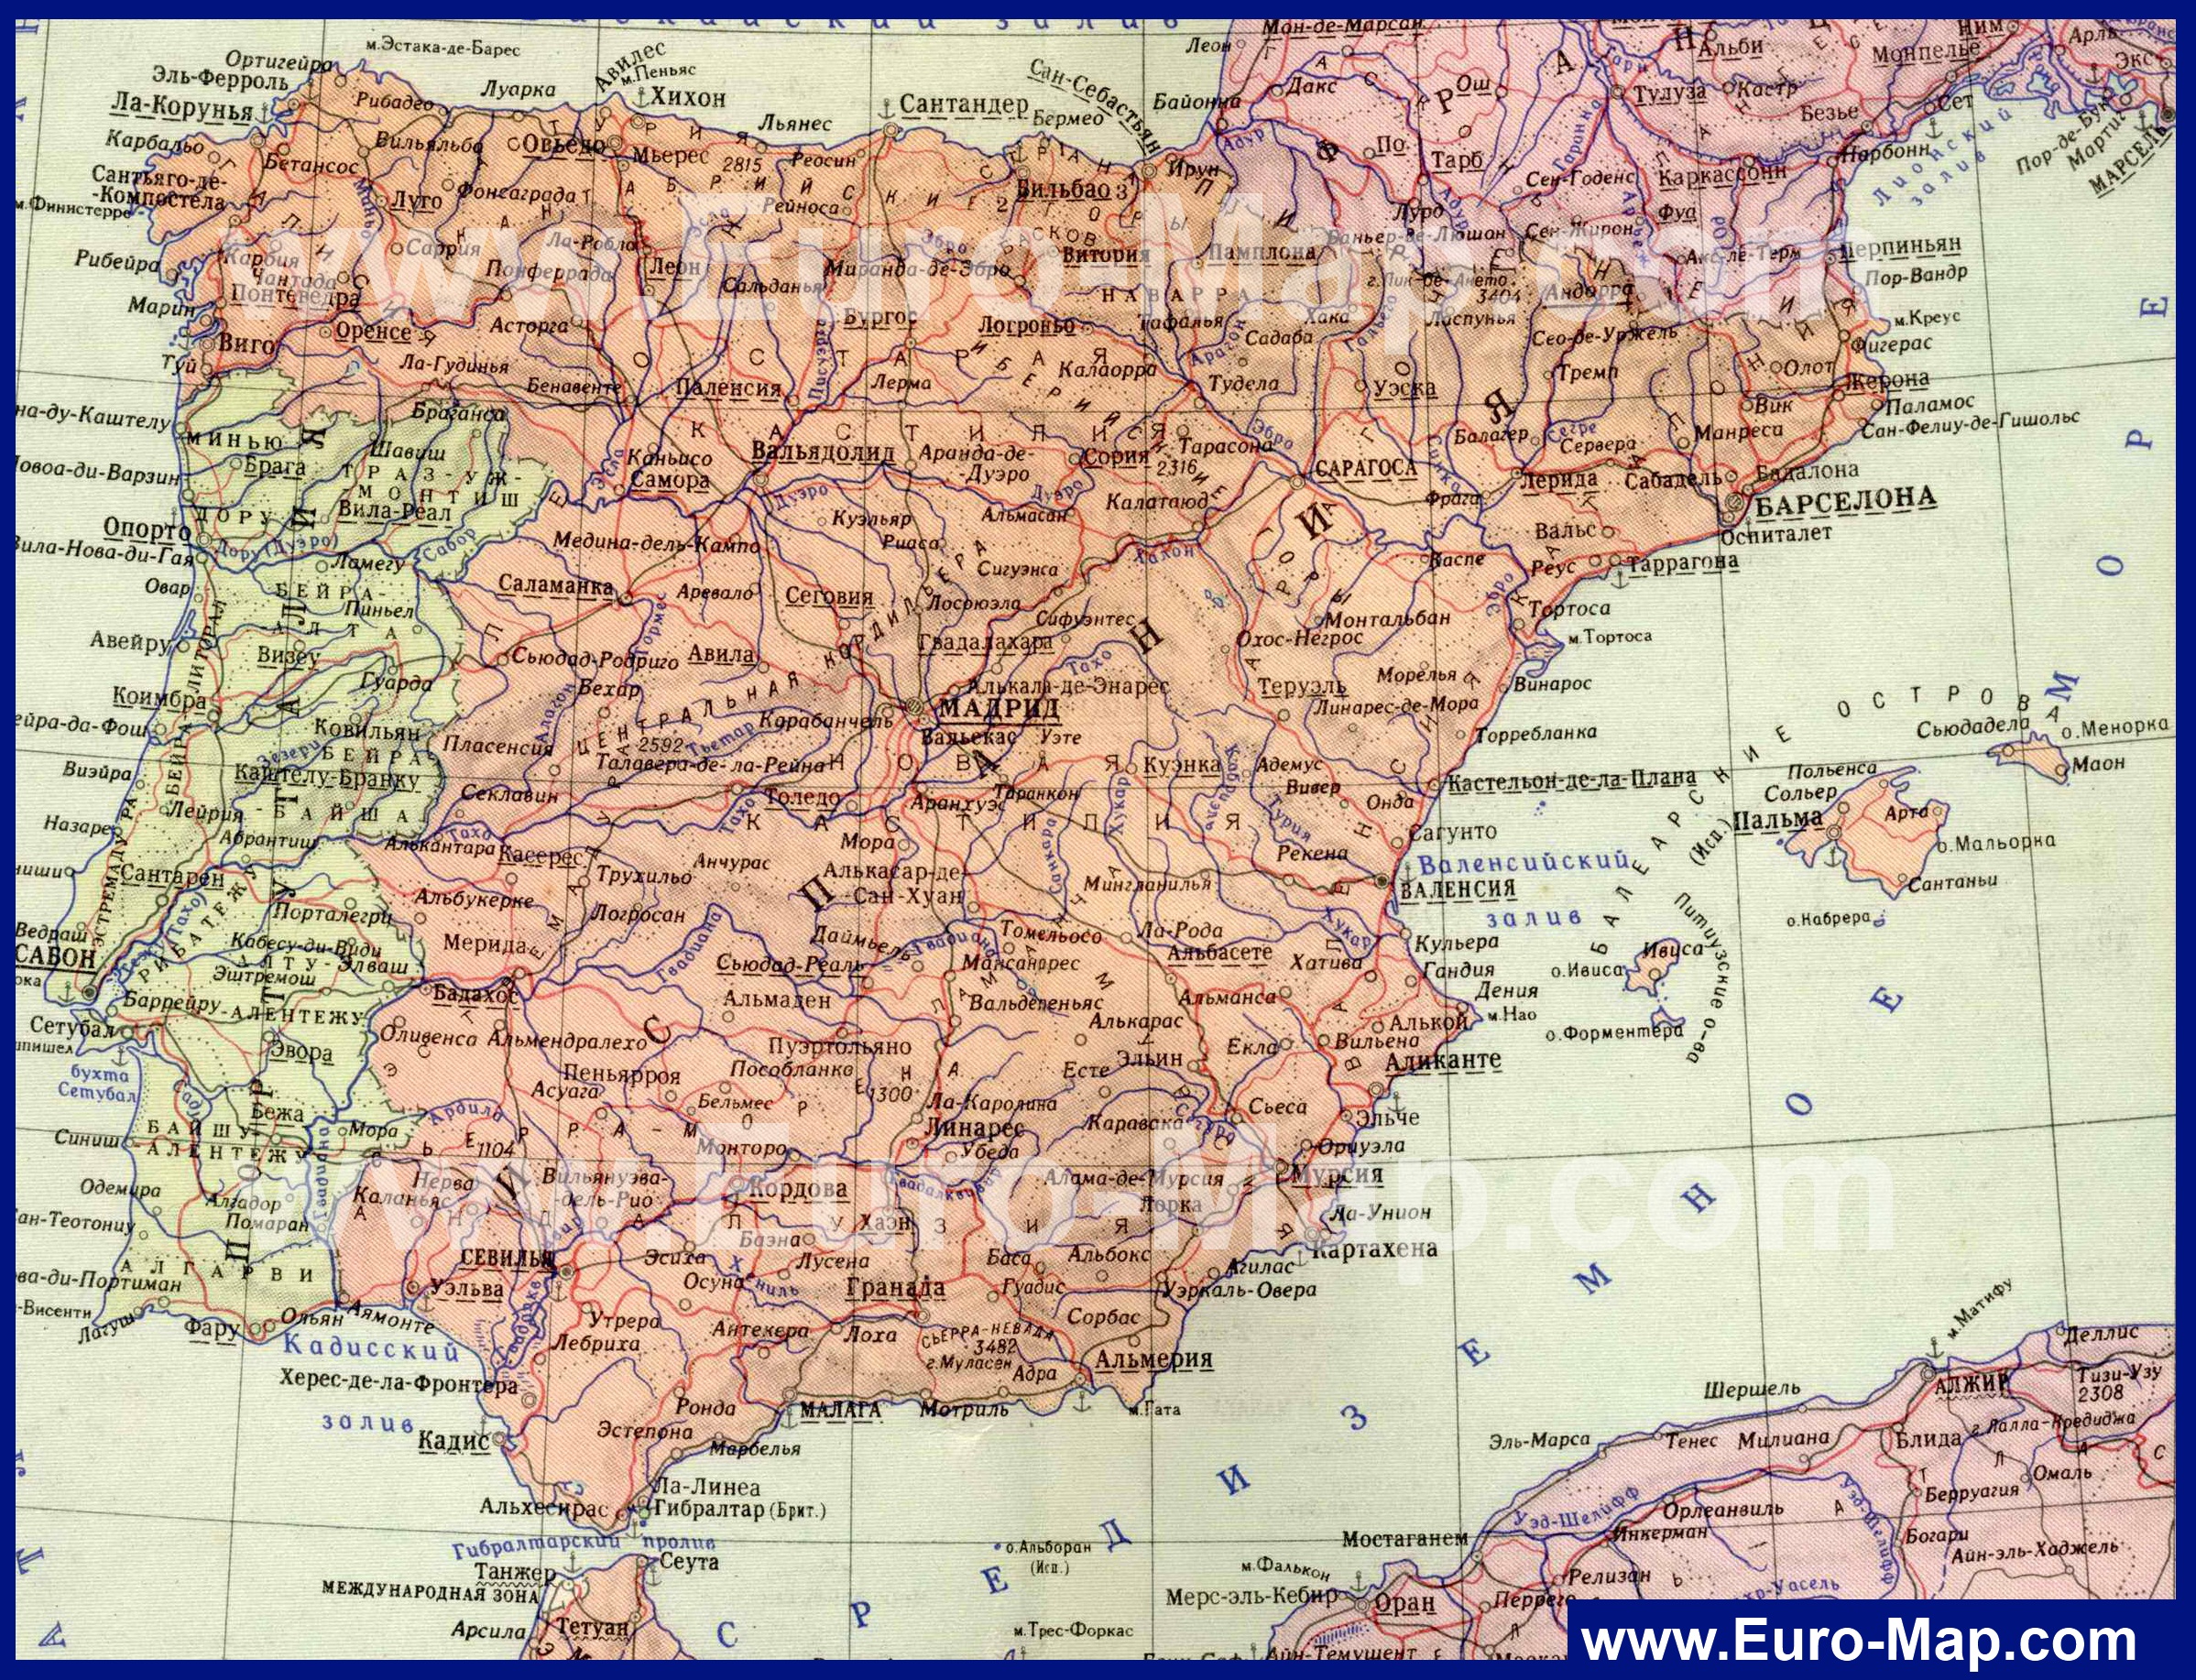 http://euro-map.com/karty-ispanii/podrobnaya-karta-ispanii-na-russkom-yazyke.jpg